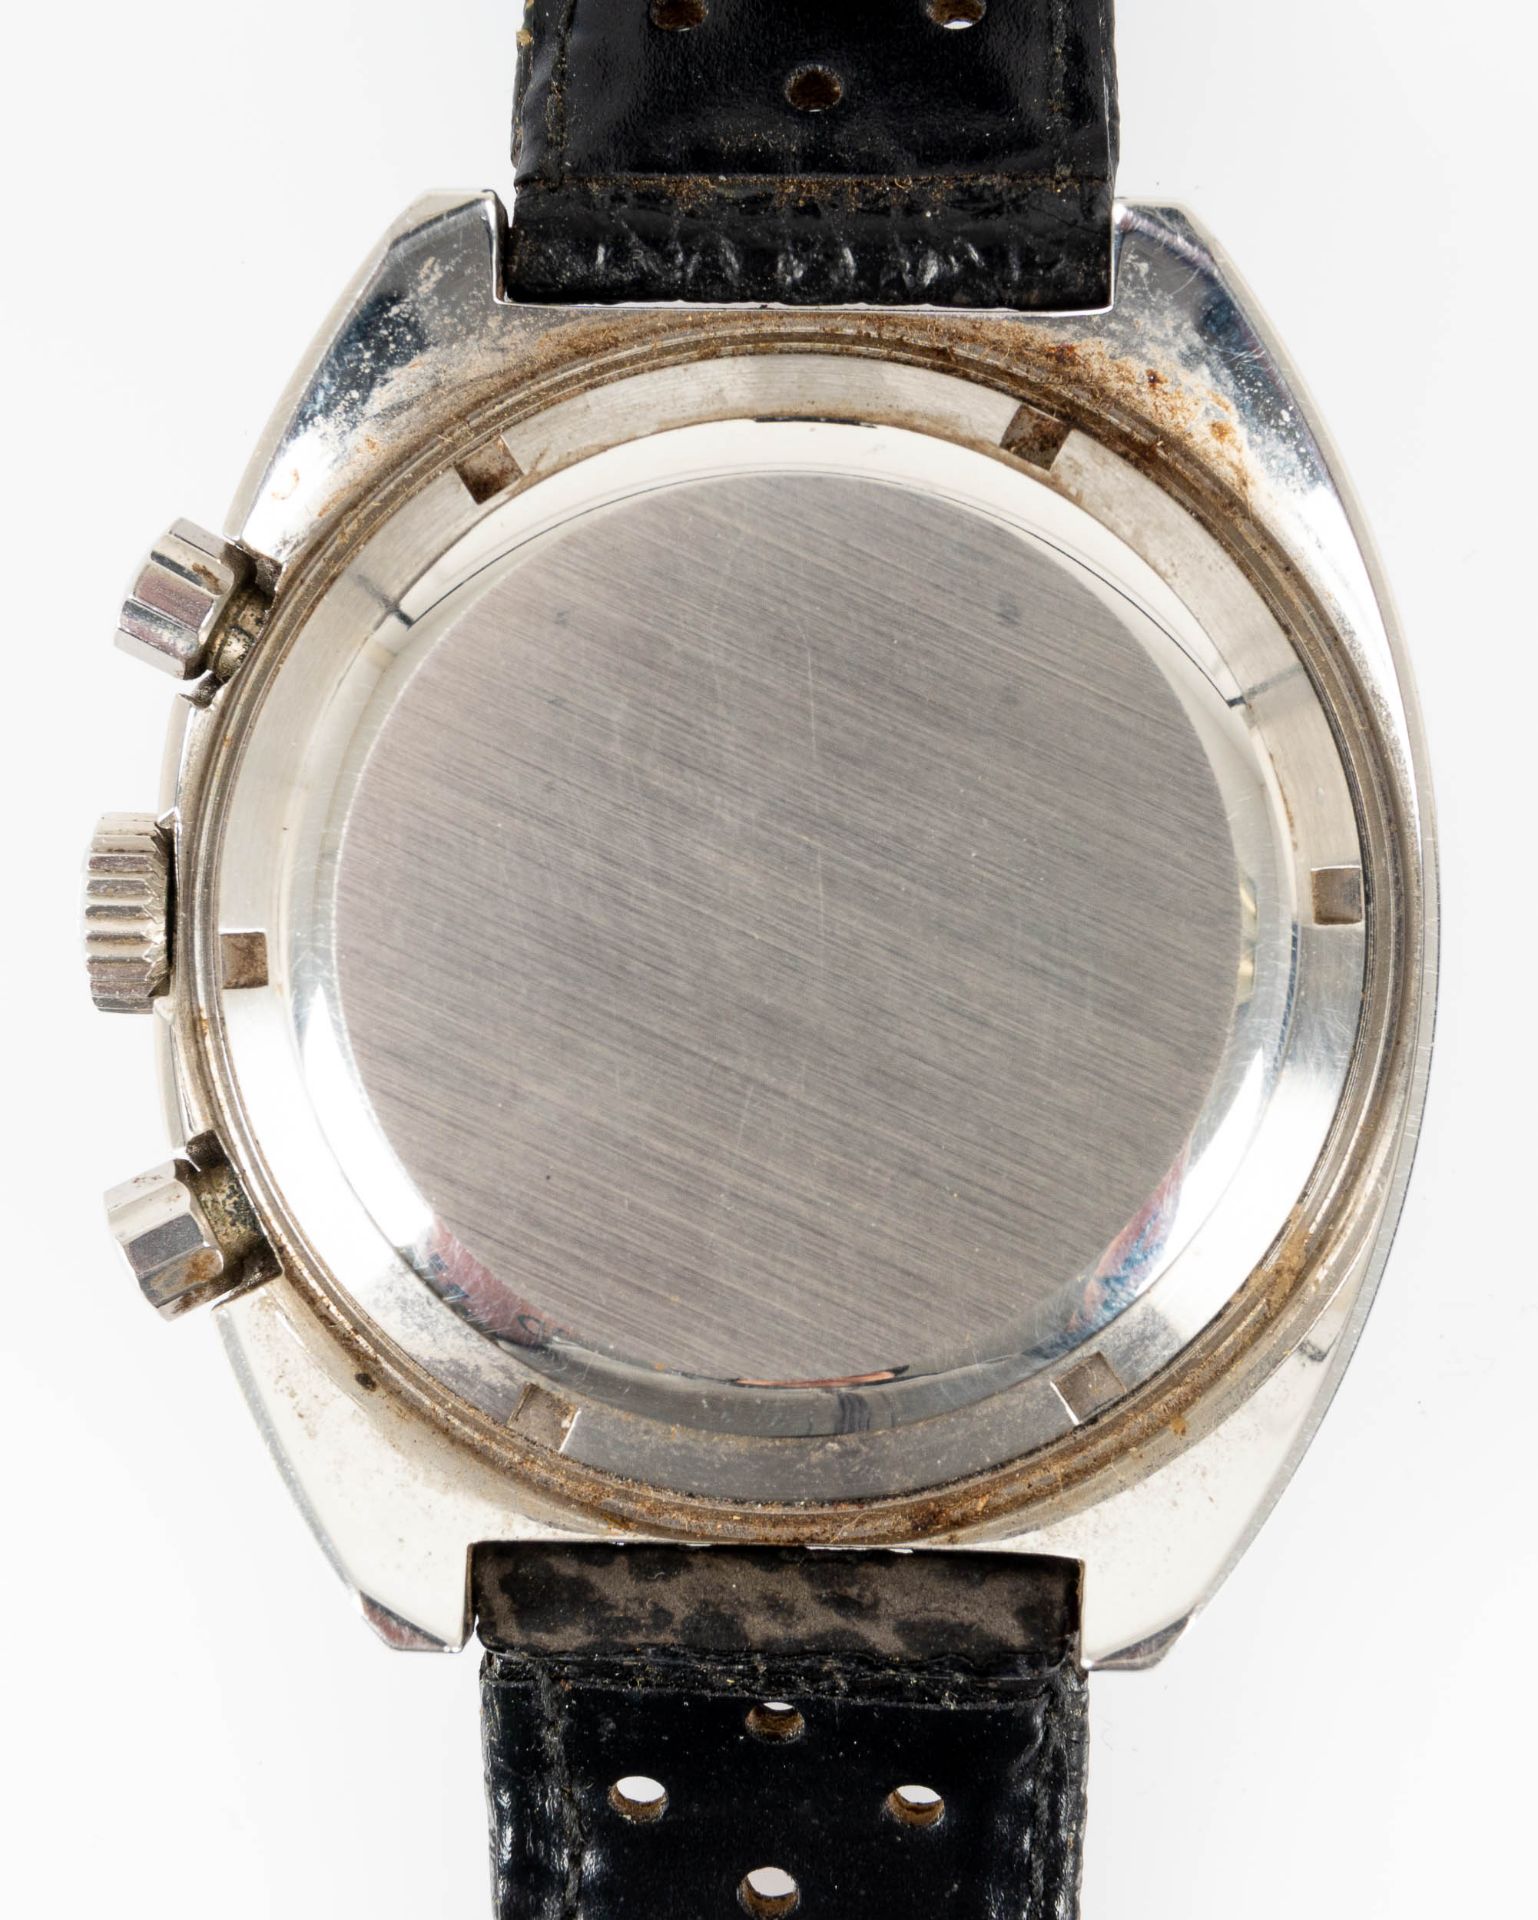 Gesuchte HEUER Chronograph AUTAVIA der 1960er/70er Jahre, Military-Ausführung, Gehäusedurchmesser c - Bild 7 aus 10